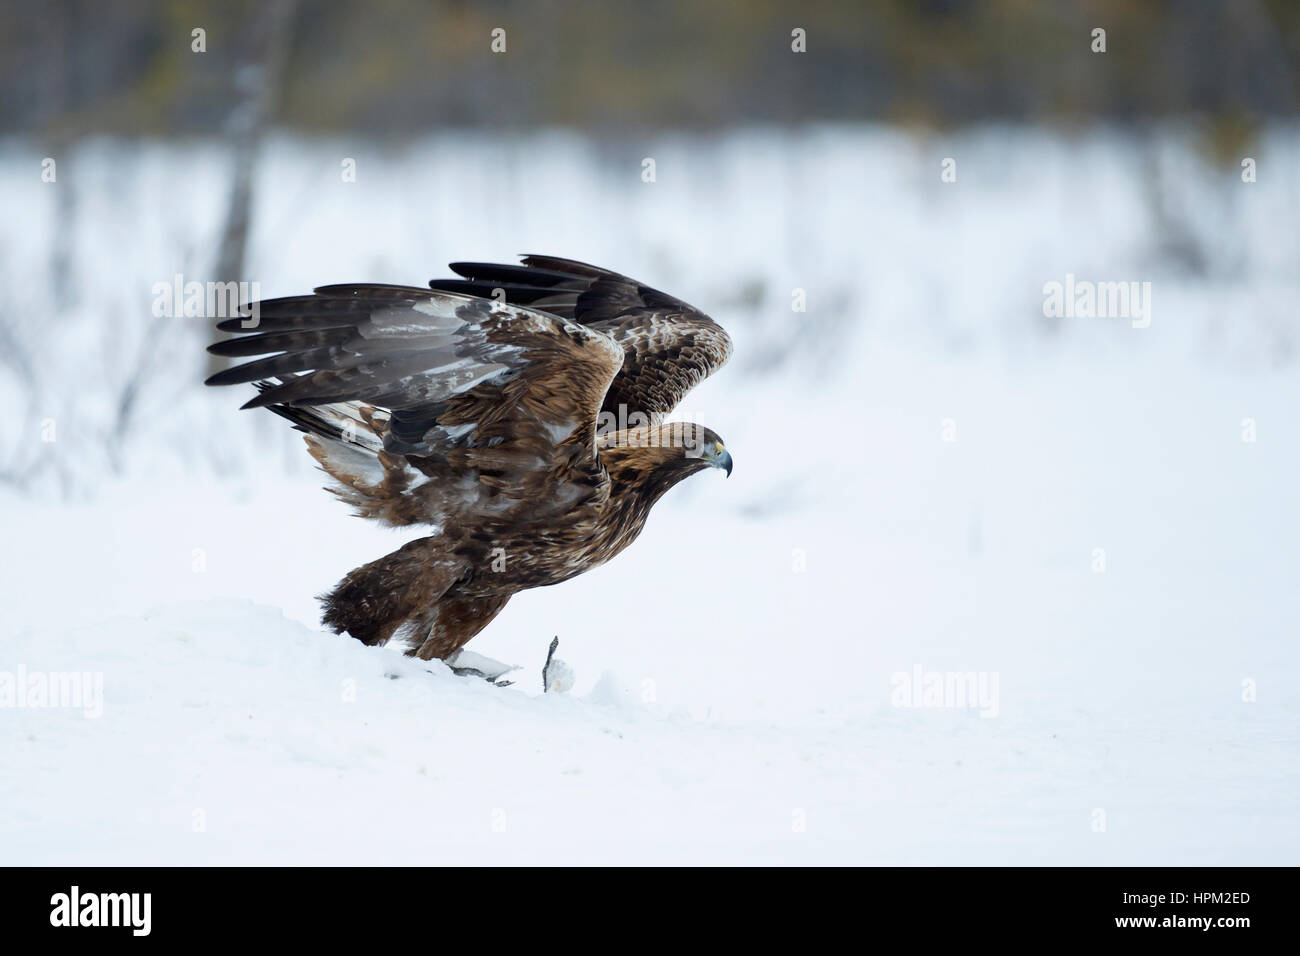 Aquila reale (Aquila chrysaetos) prendendo il largo nella neve Foto Stock